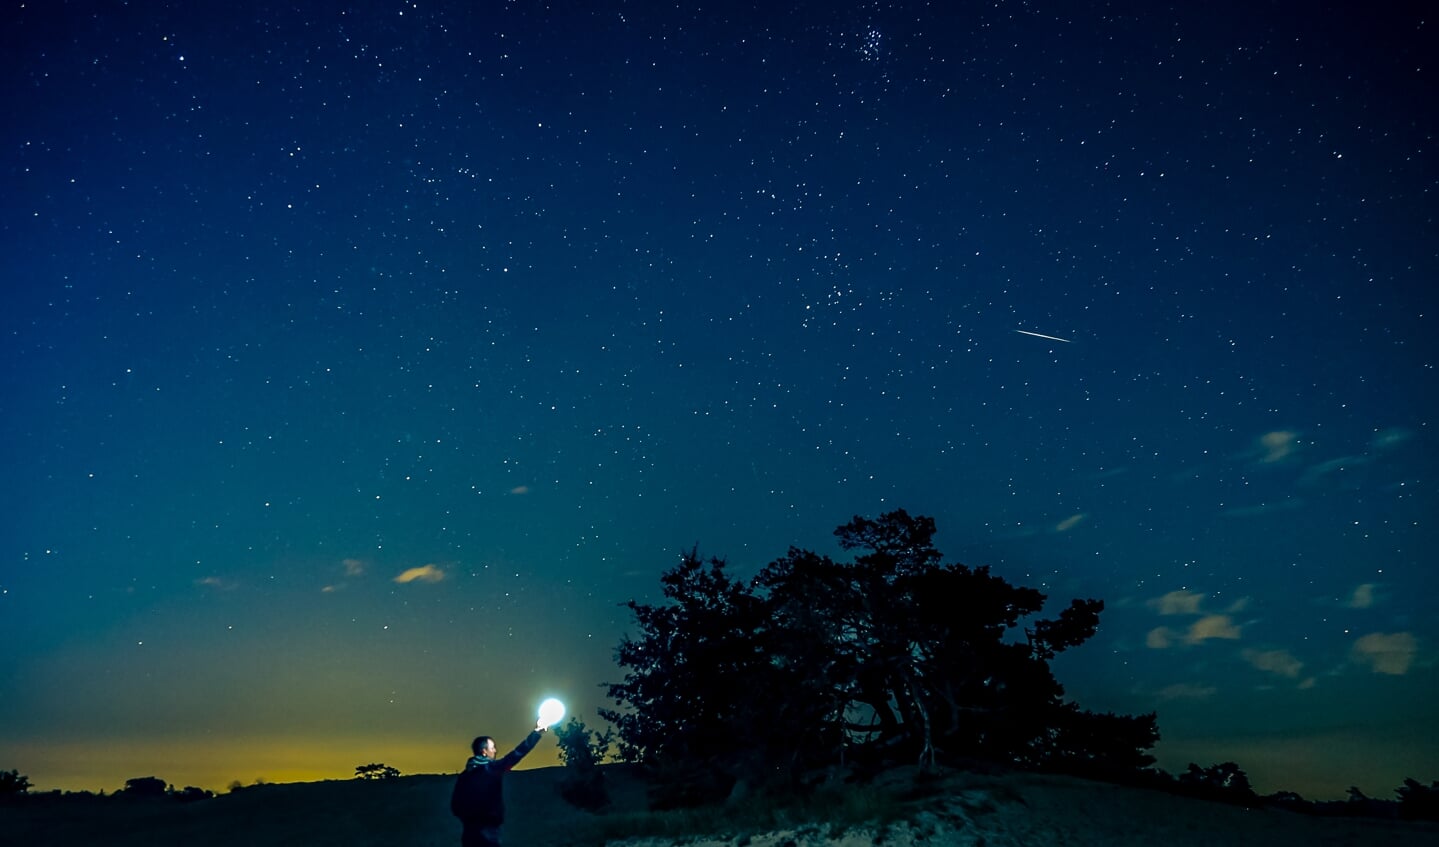  ,,13 aug. 2021 Kootwijk:  Genieten van de vallende sterren  aan de hemel tijdens een heldere zomernacht, even tijd voor een selfie.” 